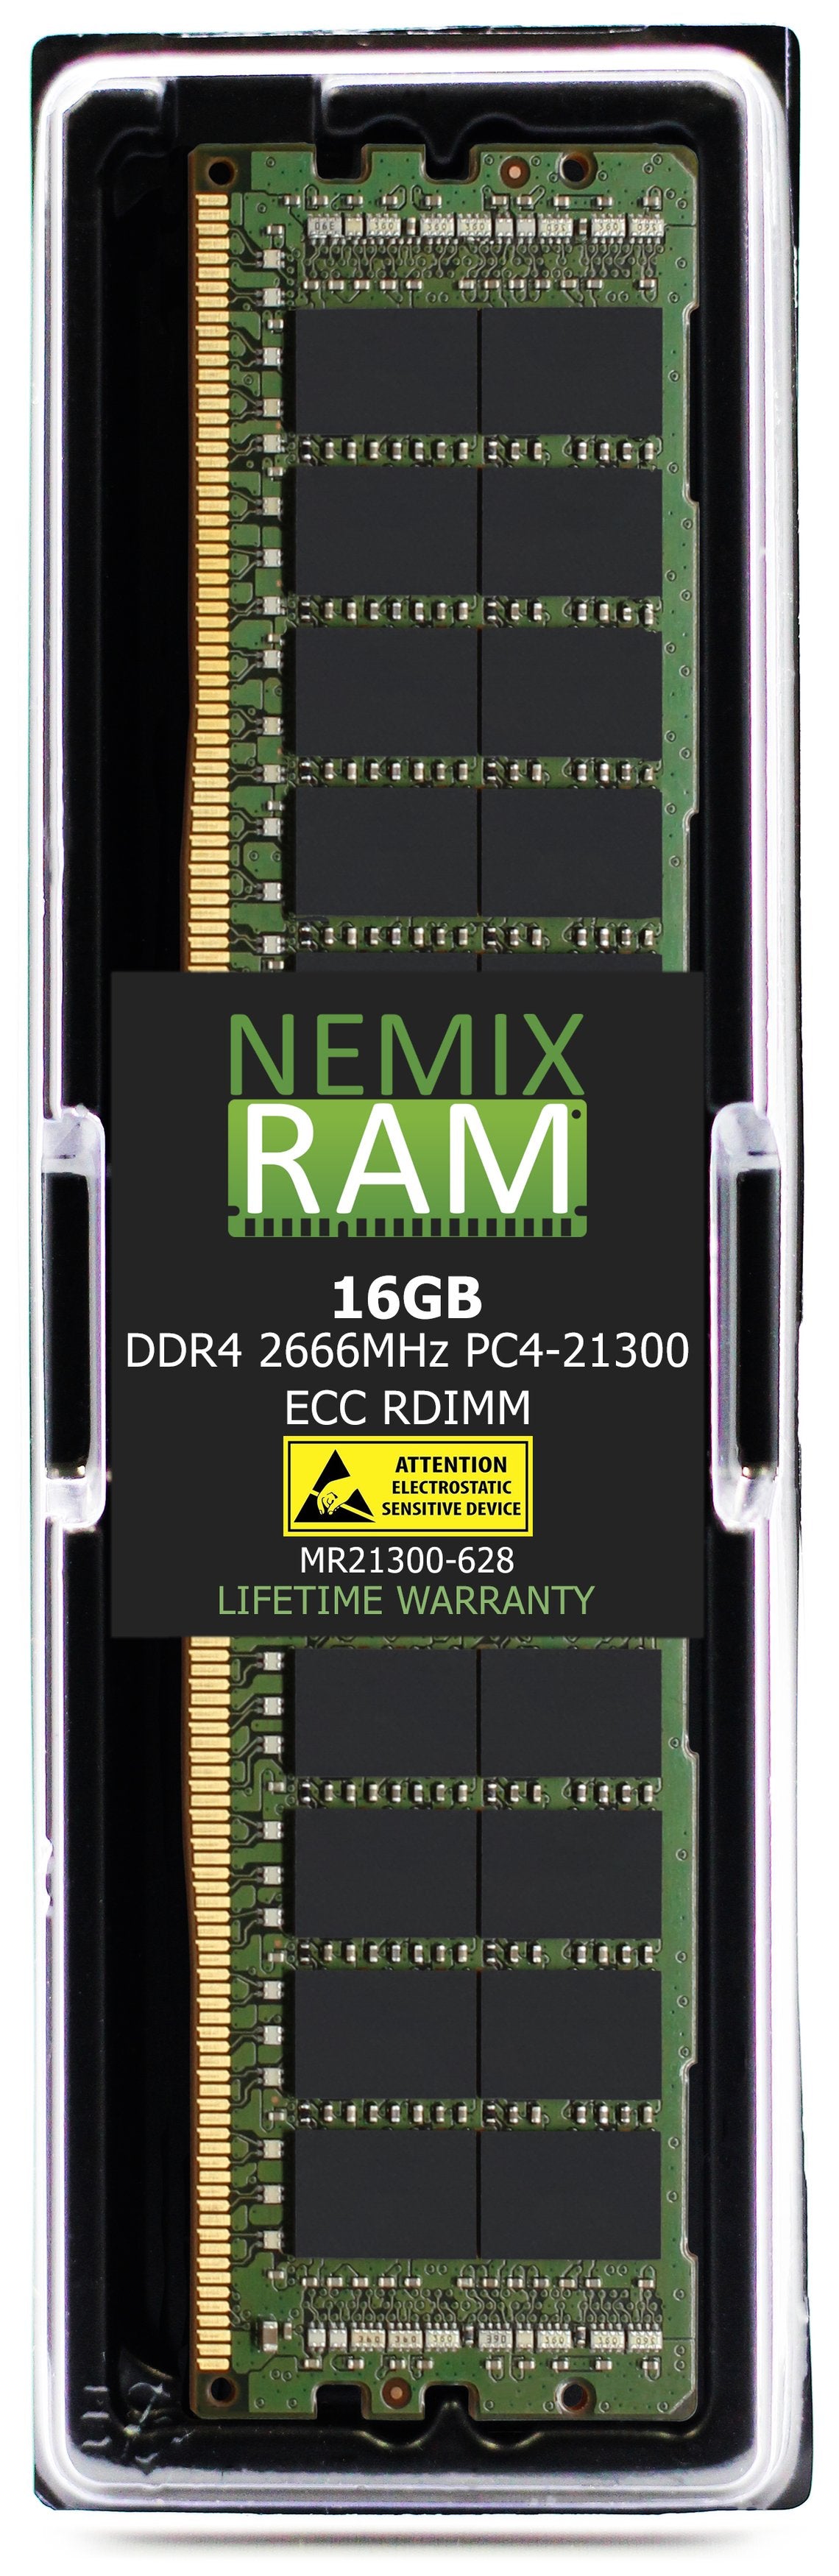 16GB DDR4 2666MHZ PC4-21300 RDIMM Compatible with Supermicro MEM-DR416L-CL07-ER26